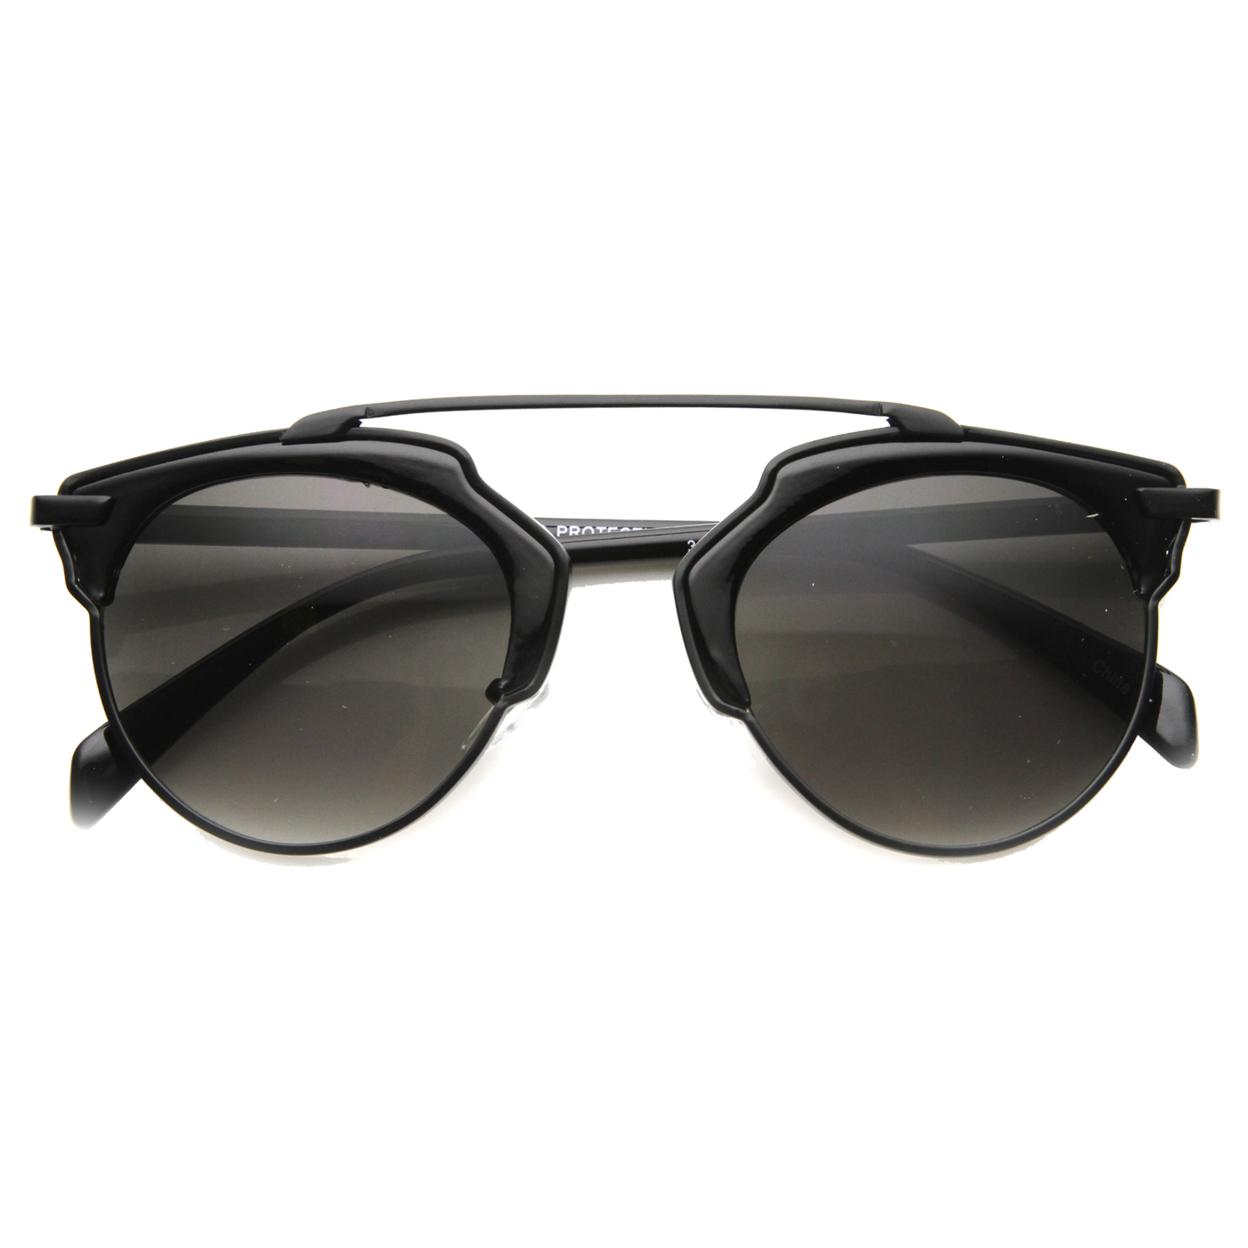 Unisex Horn Rimmed Sunglasses With UV400 Protected Composite Lens 9859 - Tortoise-Gunmetal / Green